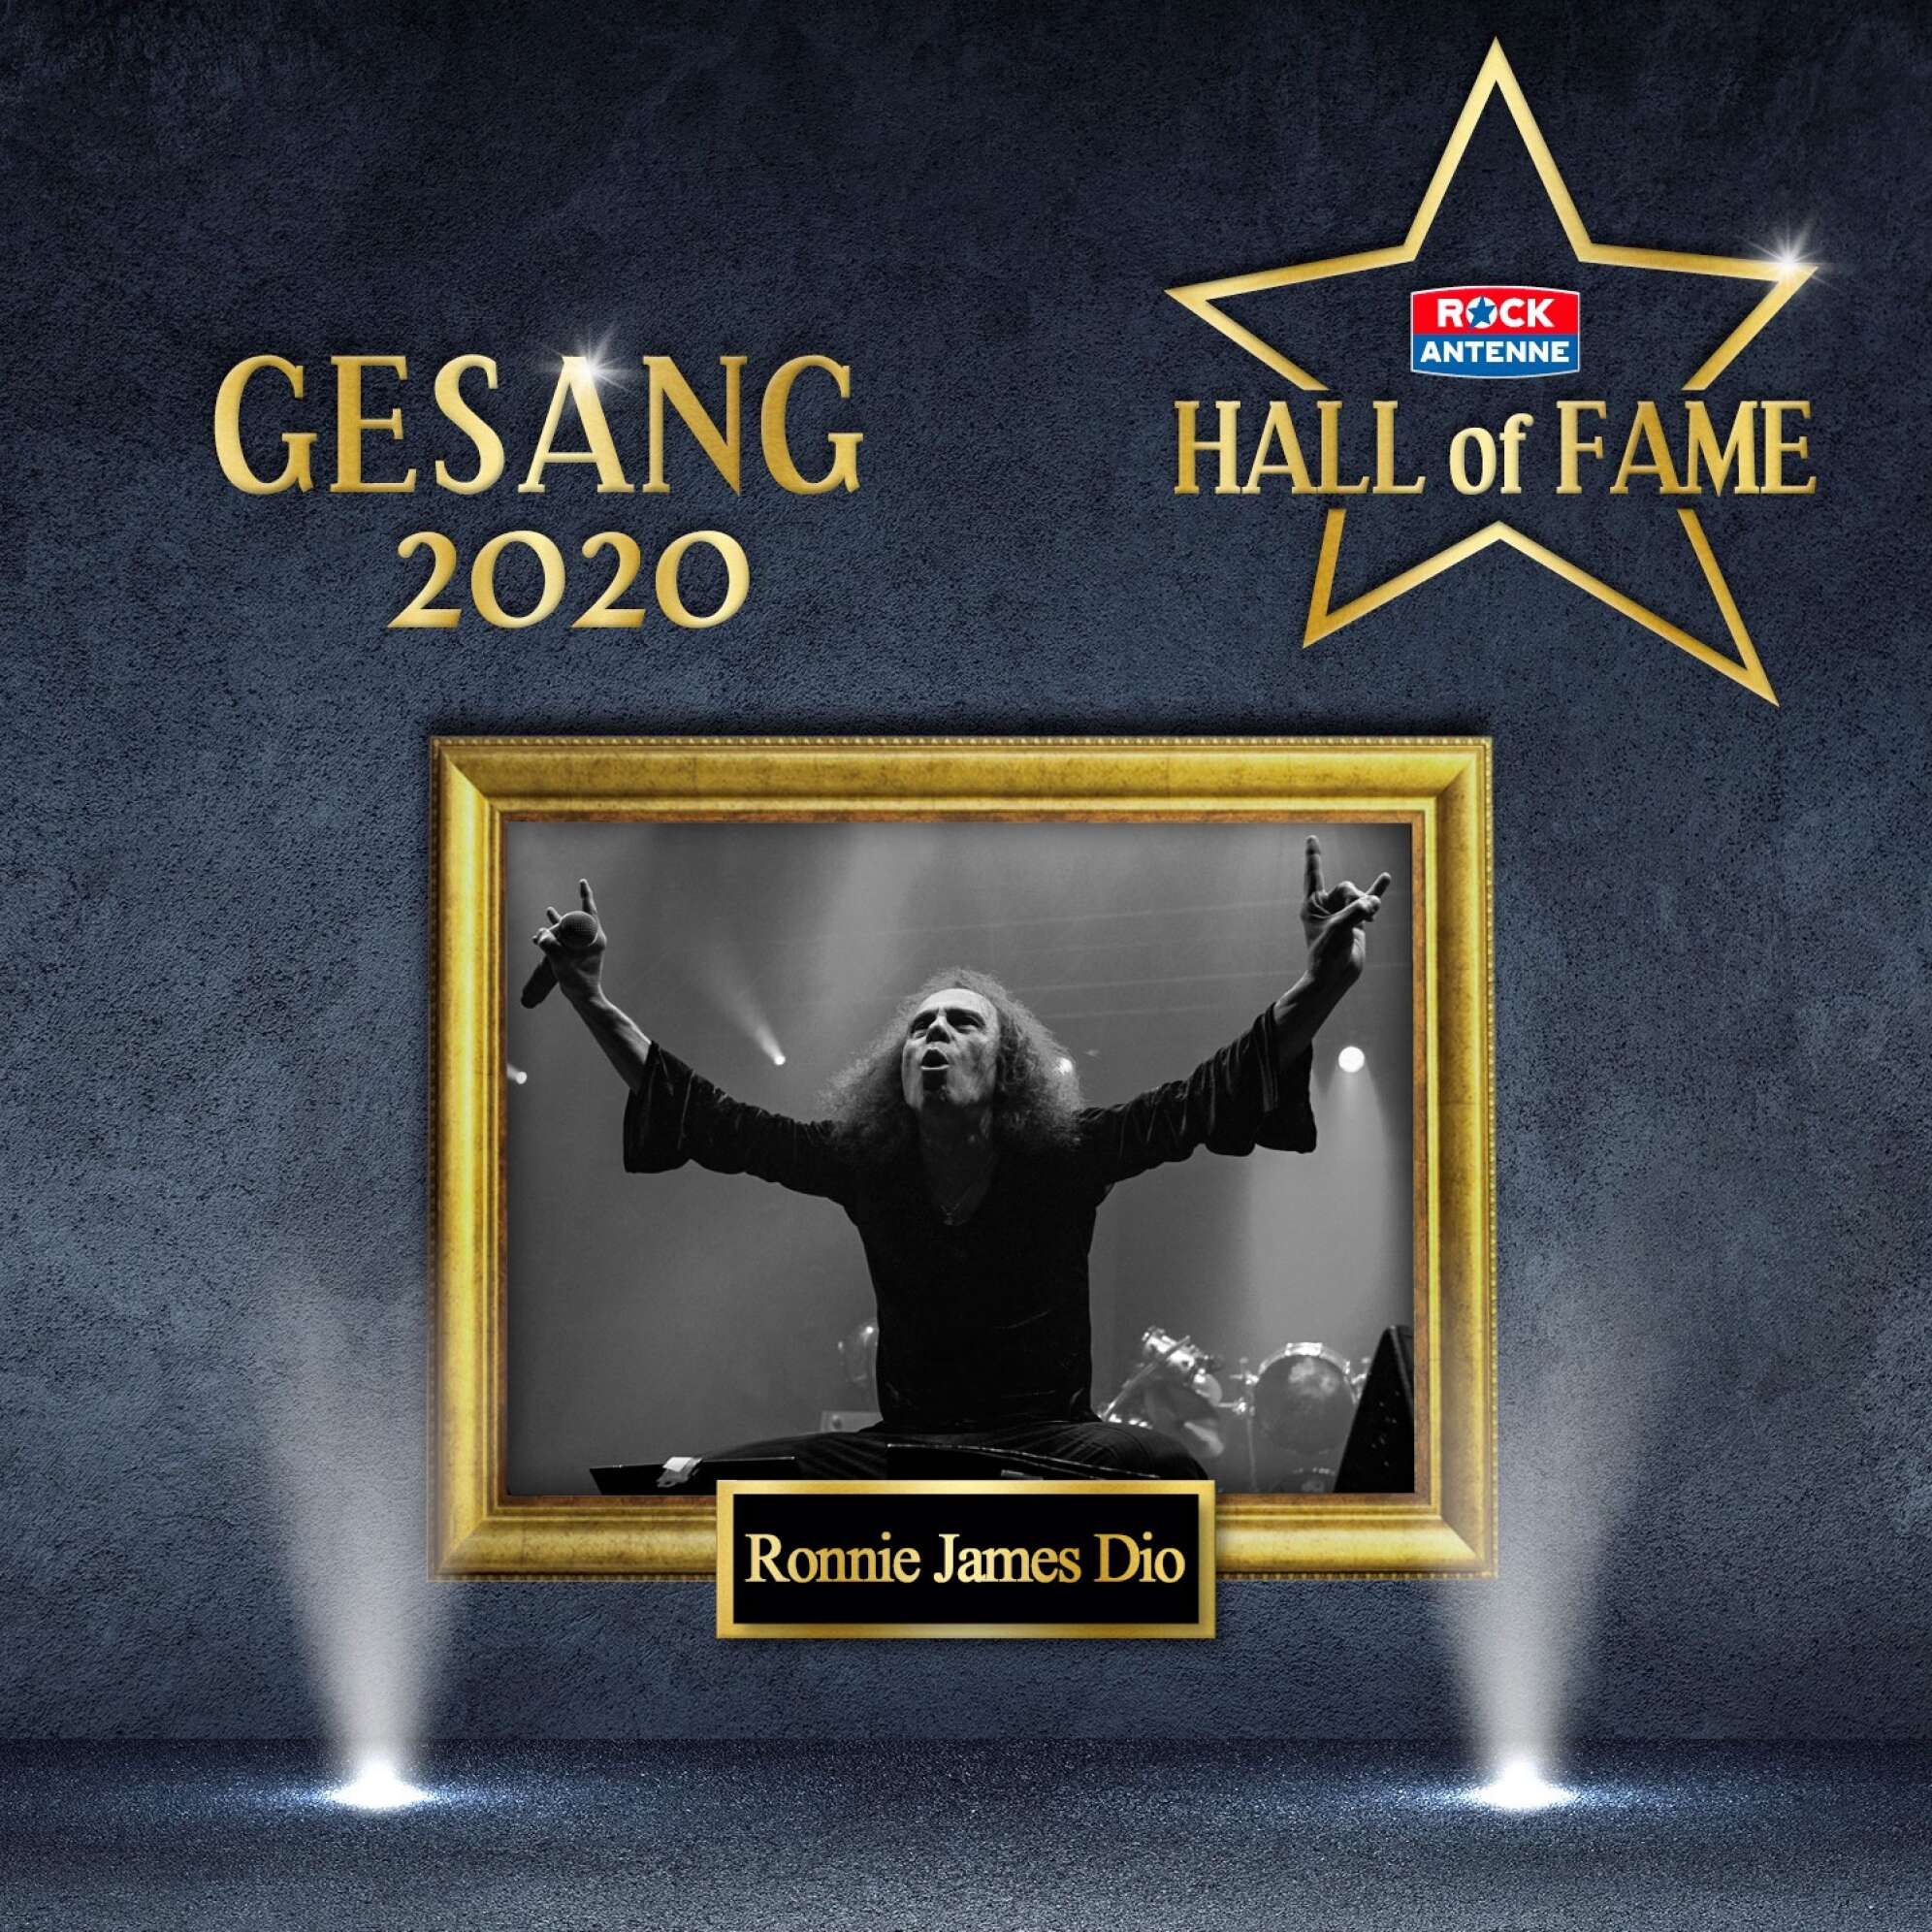 Bild der ROCK ANTENNE Hall of Fame - Gewinner Kategorie Gesang 2020: Ronnie James Dio